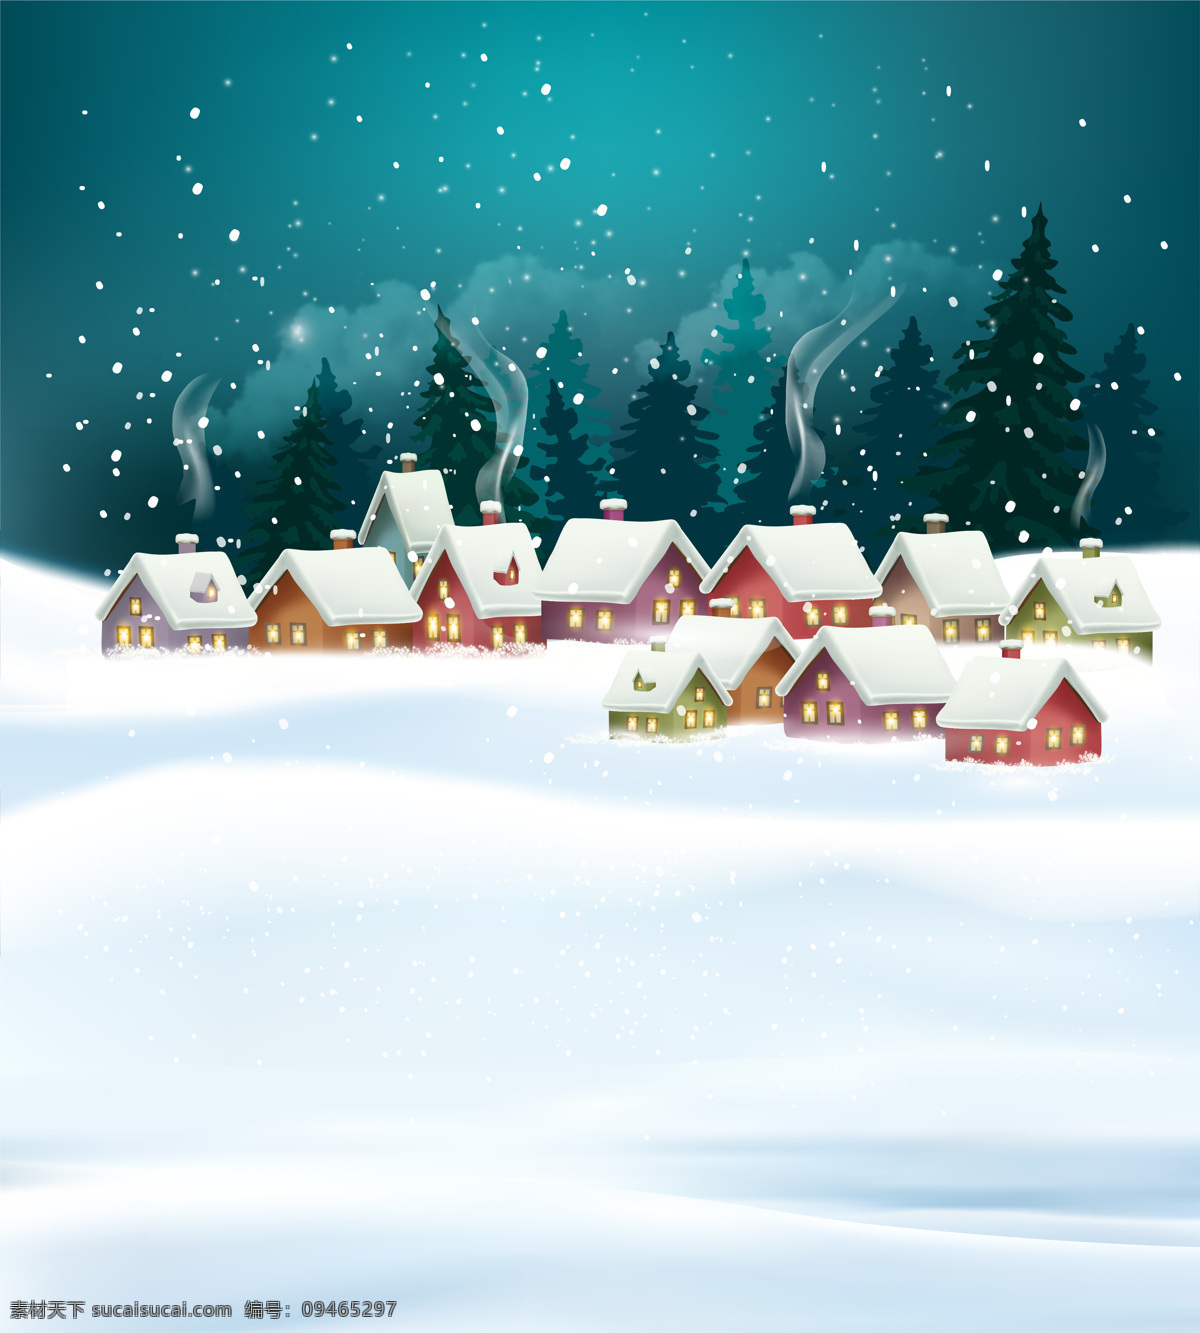 蓝色 浪漫 冬季 背景 村庄 积雪 卡通 圣诞 圣诞节 手绘 树木 雪花